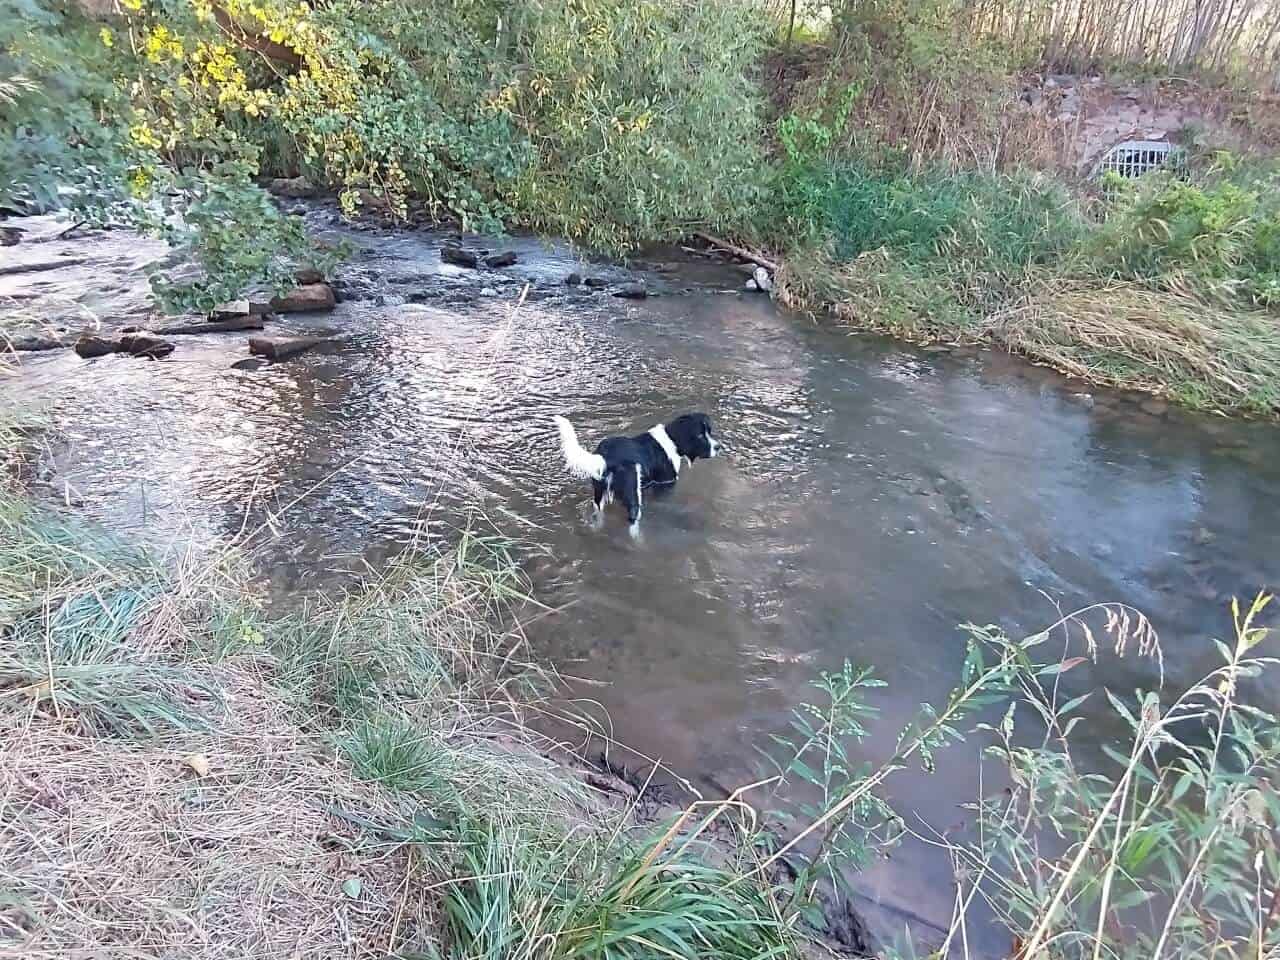 Entwicklung zum Junghund - Udo lernt auch das schwimmen, - anfangs tappst er nur durch den Fluss